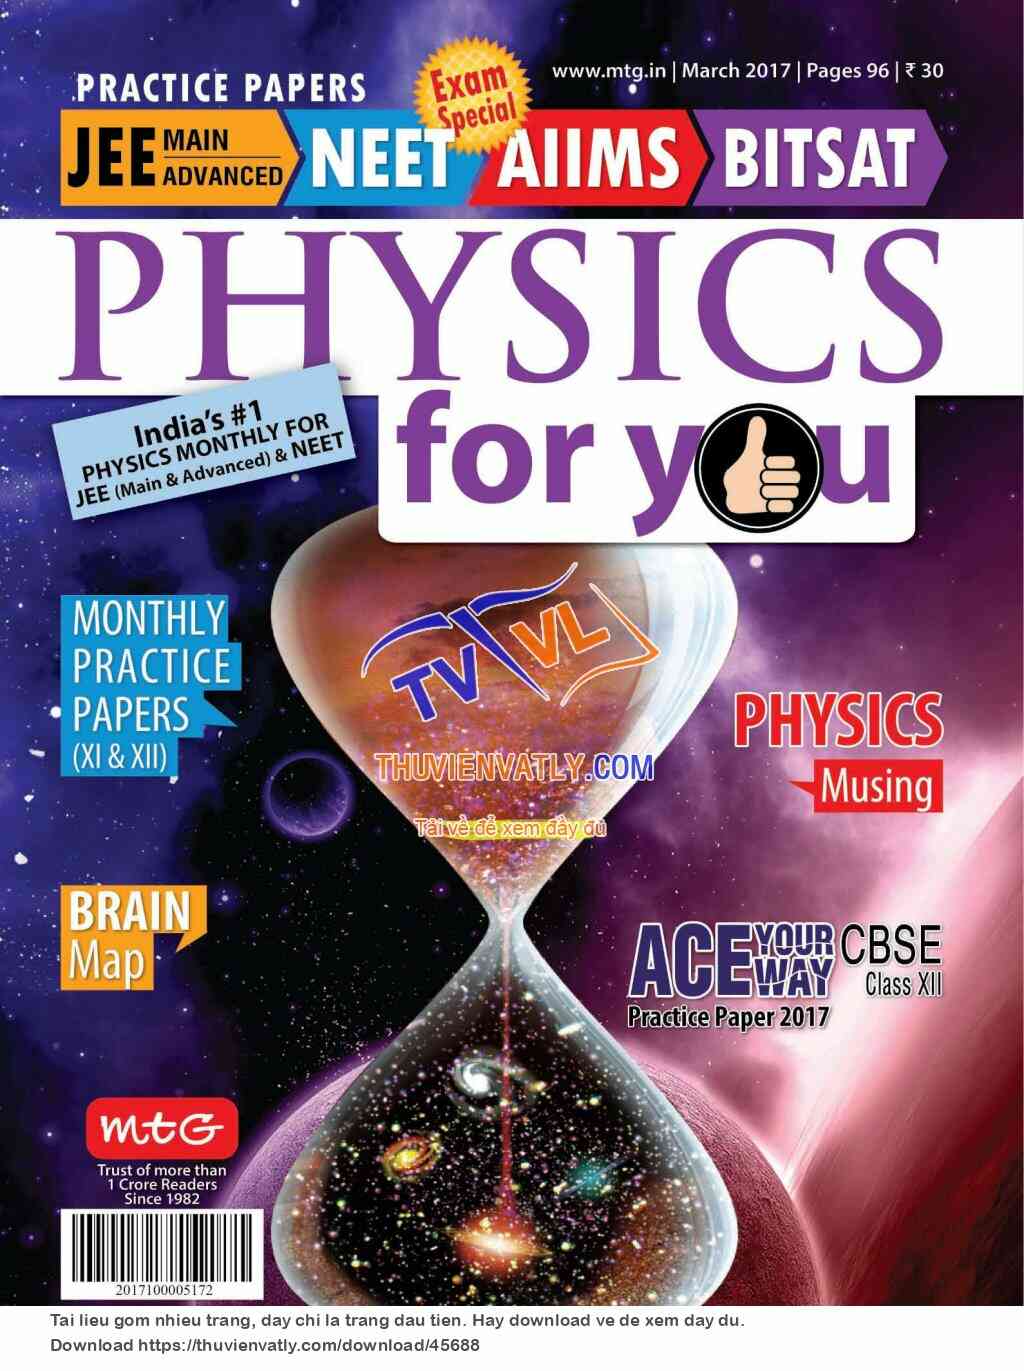 Tạp chí Physics For You - Tháng 3/2017